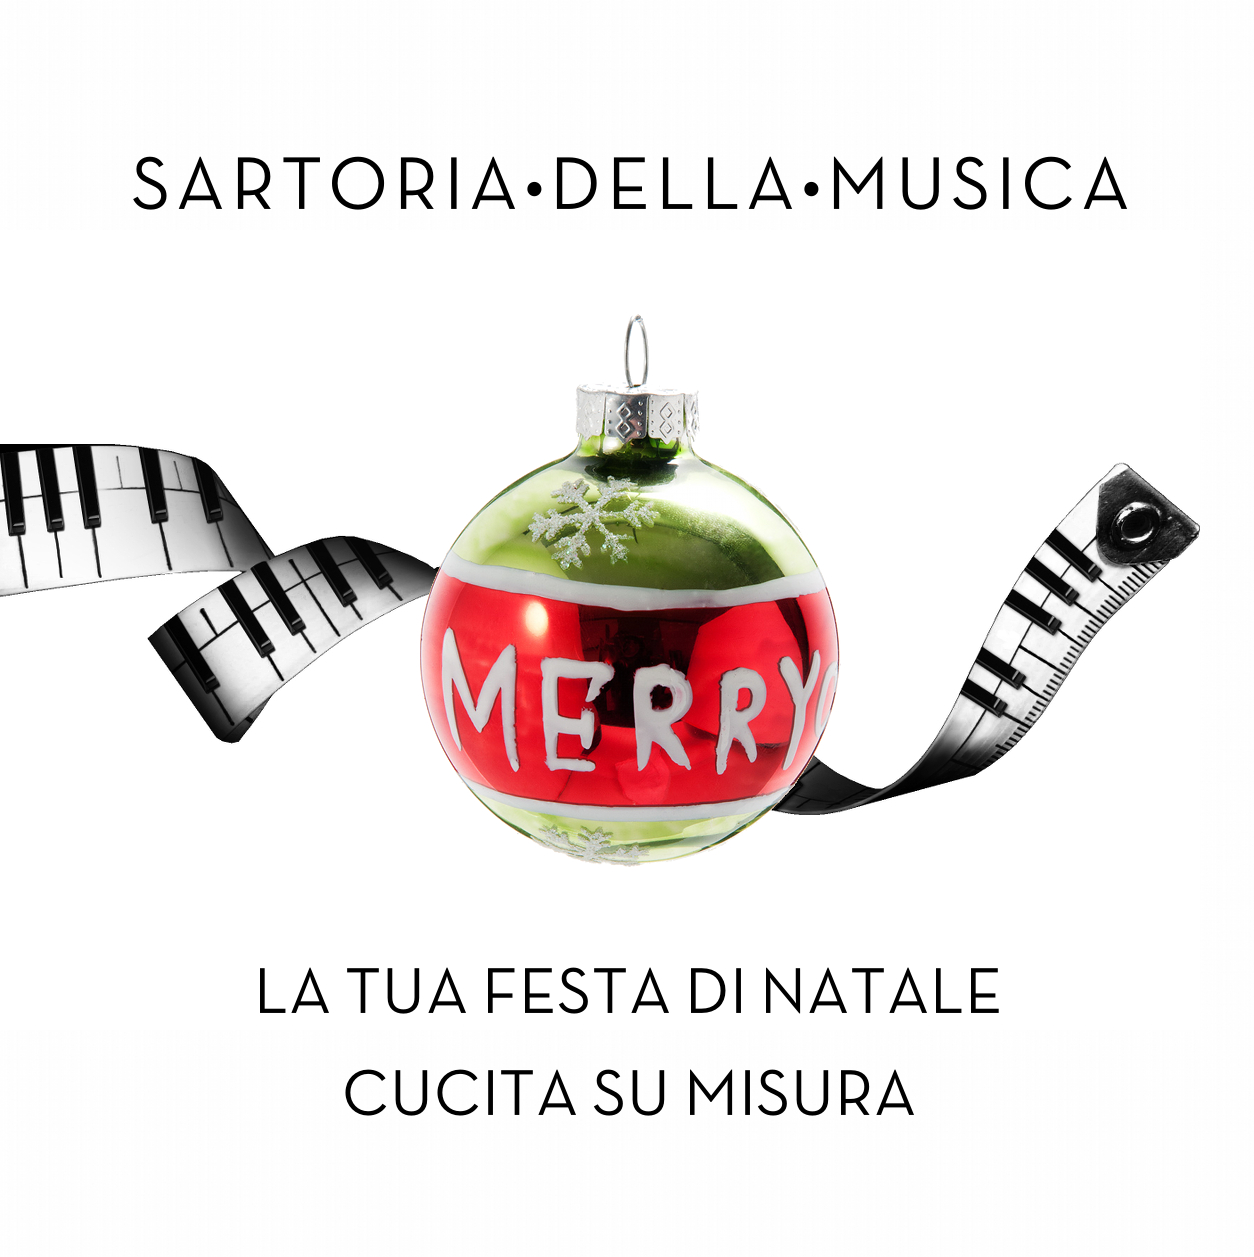 Festeggia il Natale con le atmosfere di Sartoria della Musica!